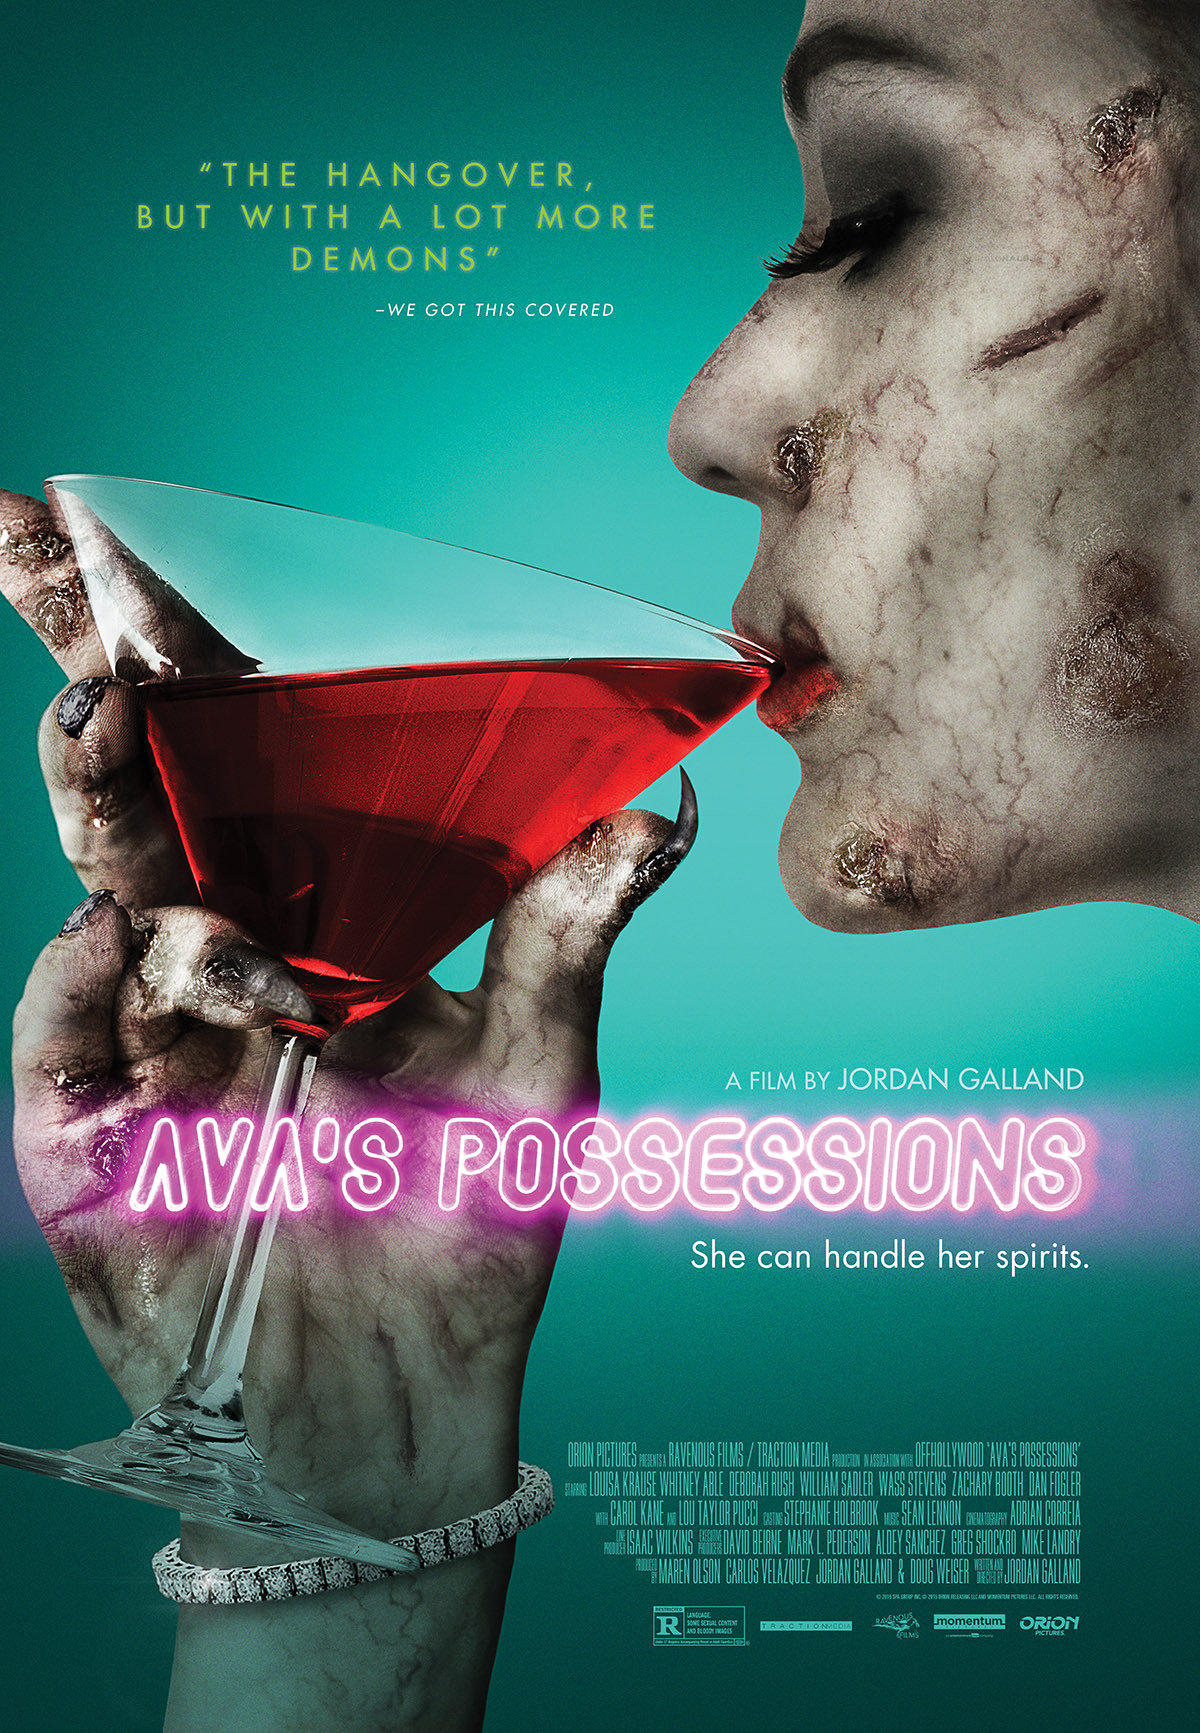 Nonton film Avas Possessions layarkaca21 indoxx1 ganool online streaming terbaru